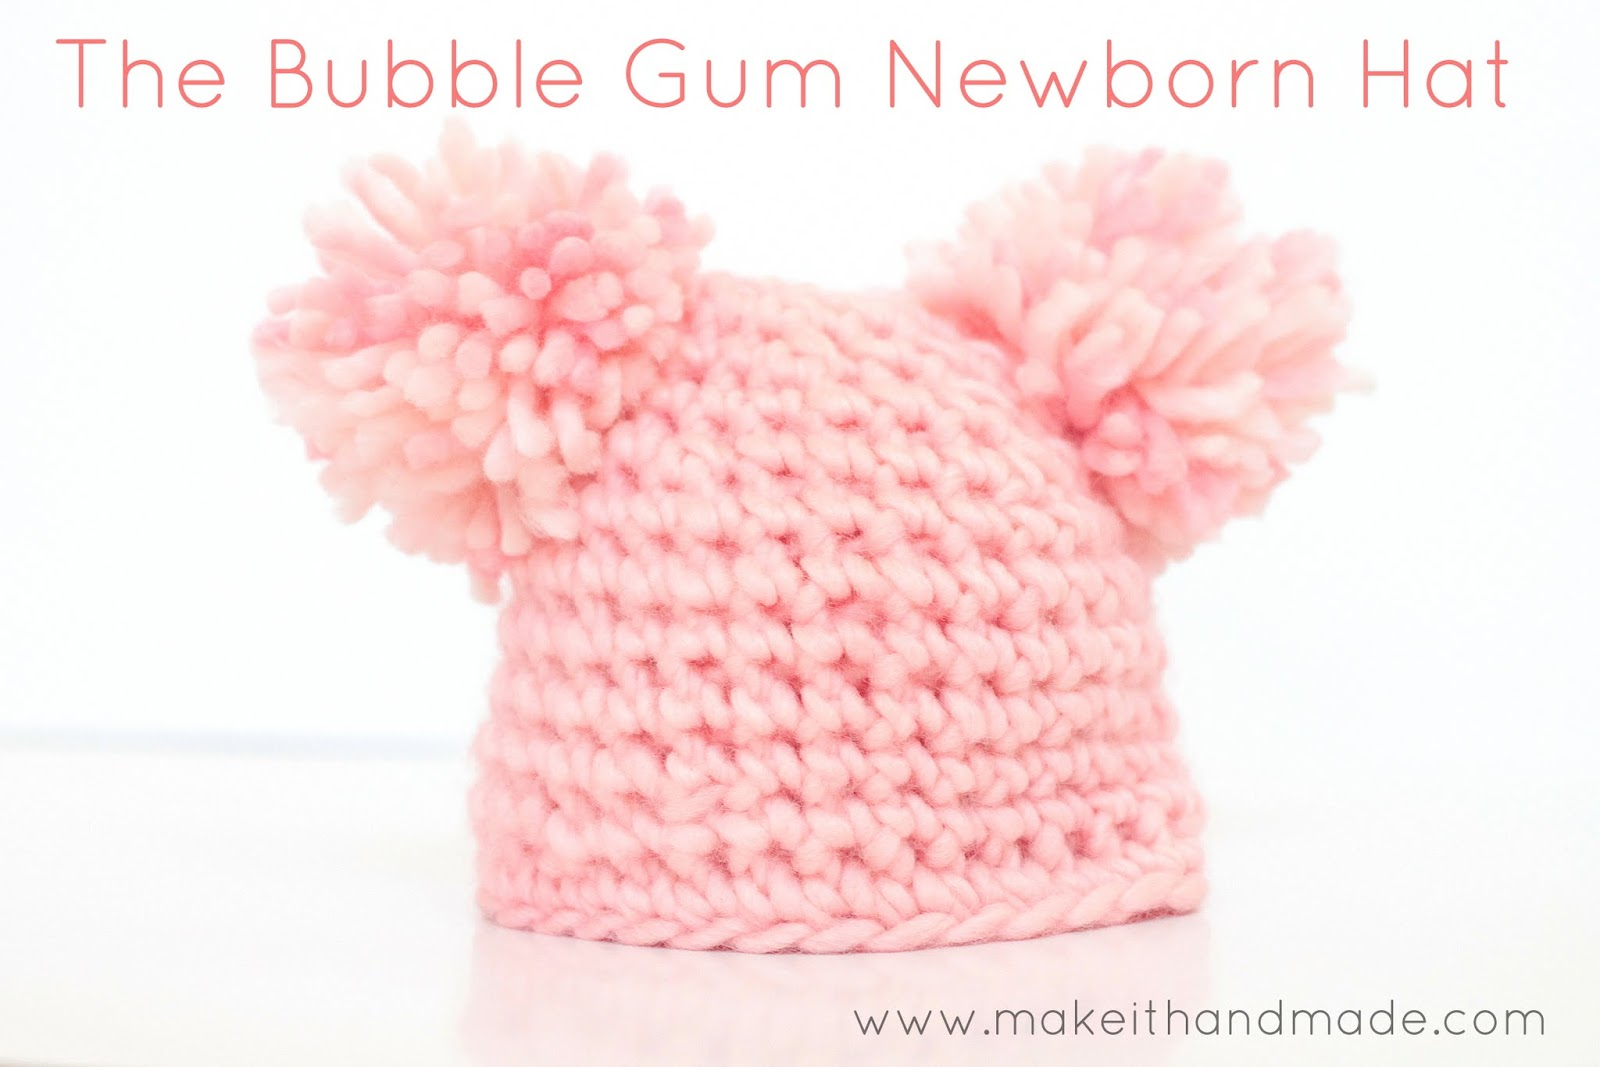 Newborn Knit Hat Pattern Free Make It Handmade The Bubble Gum Newborn Hat Free Pattern